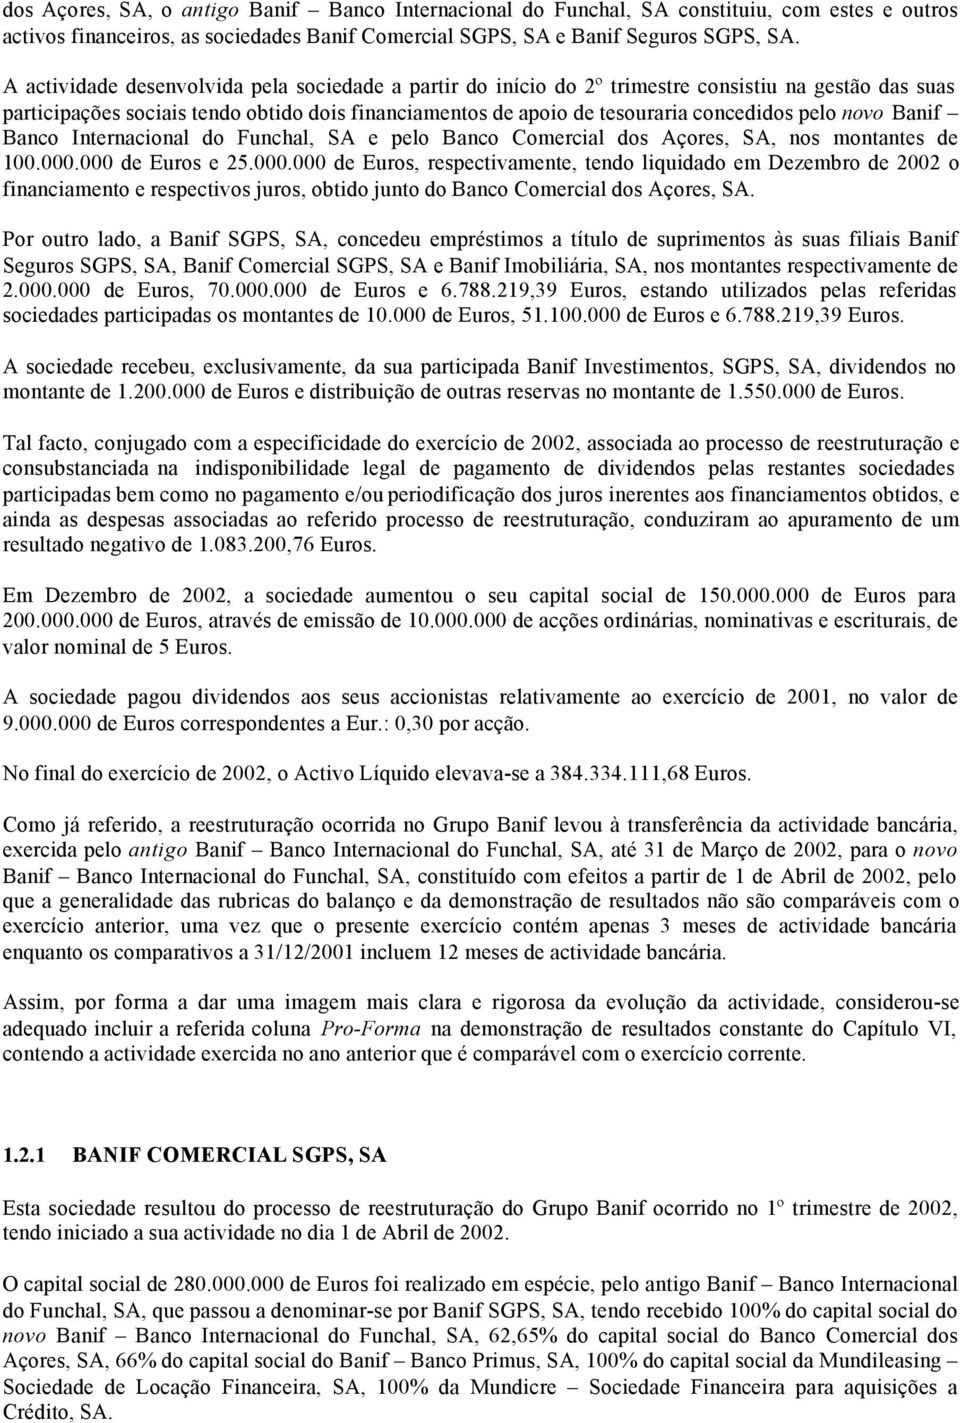 novo Banif Banco Internacional do Funchal, SA e pelo Banco Comercial dos Açores, SA, nos montantes de 100.000.